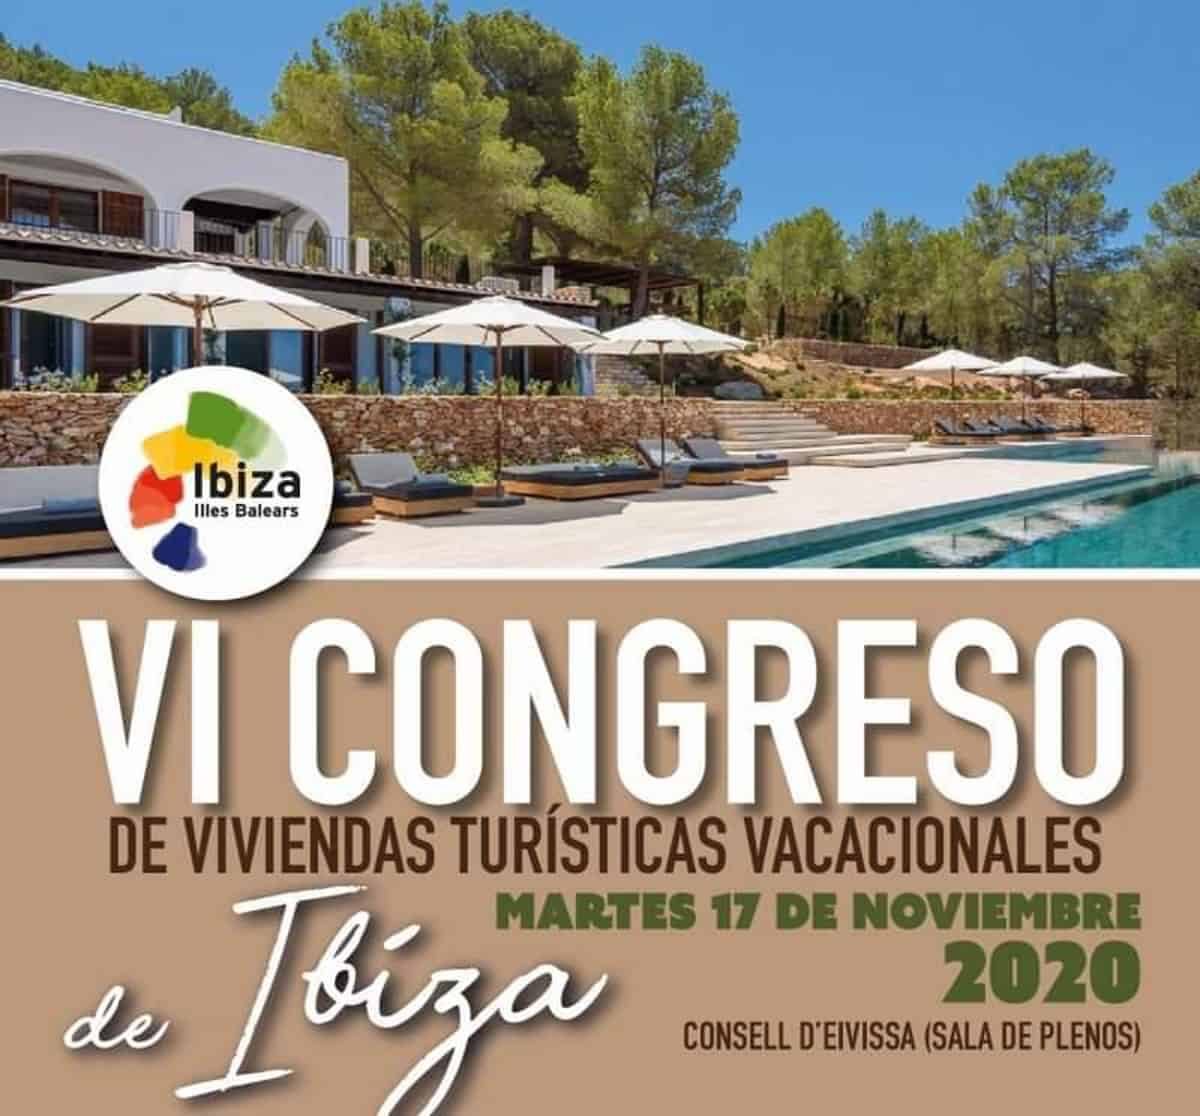 vi-congreso-de-viviendas-turisticas-vacacionales-ibiza-2020-welcometoibiza